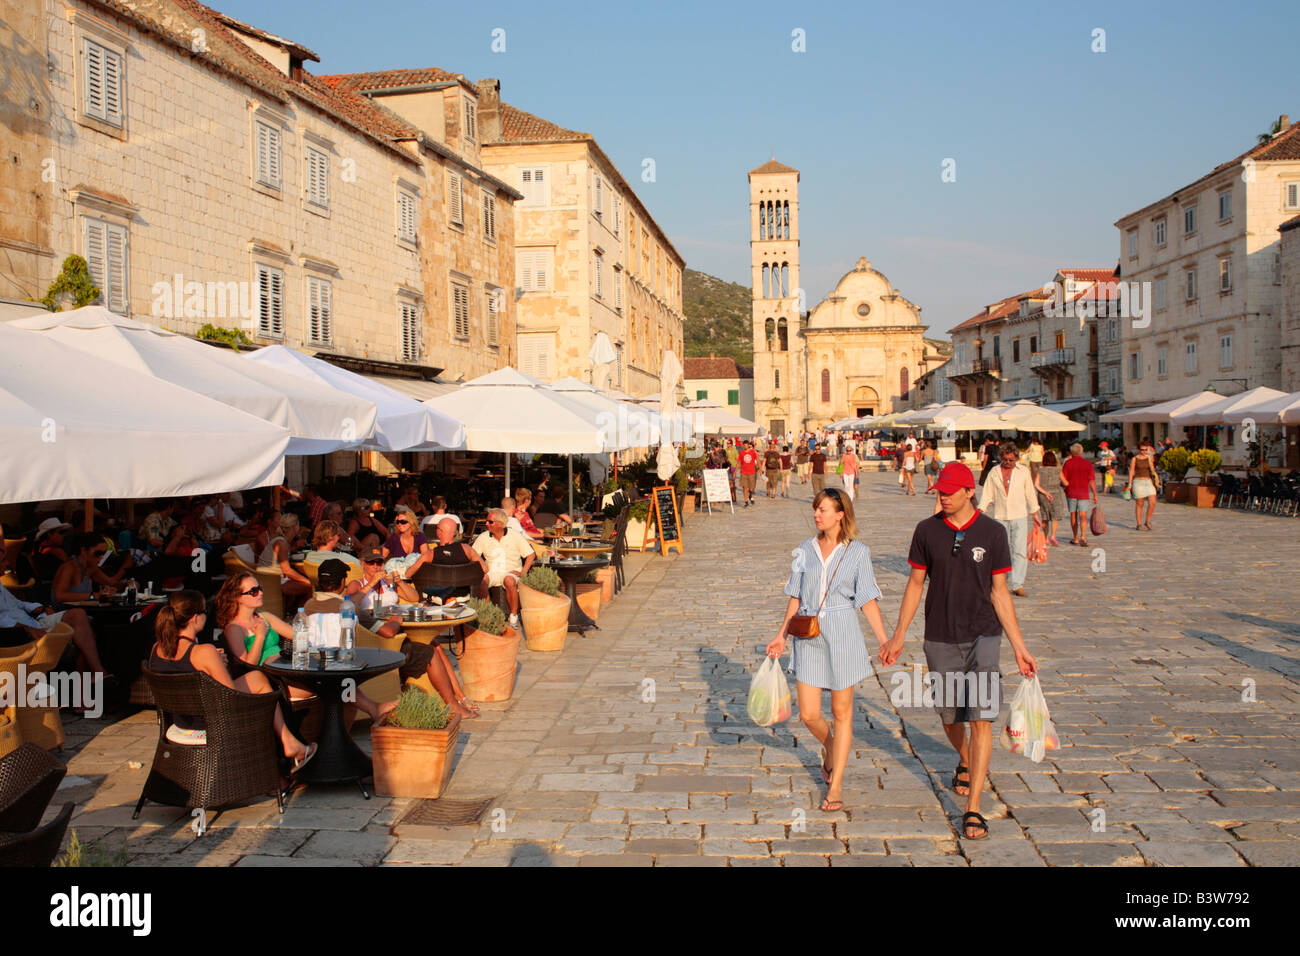 La piazza principale della citta di Hvar, isola di Hvar, Repubblica di Croazia, Europa orientale Foto Stock